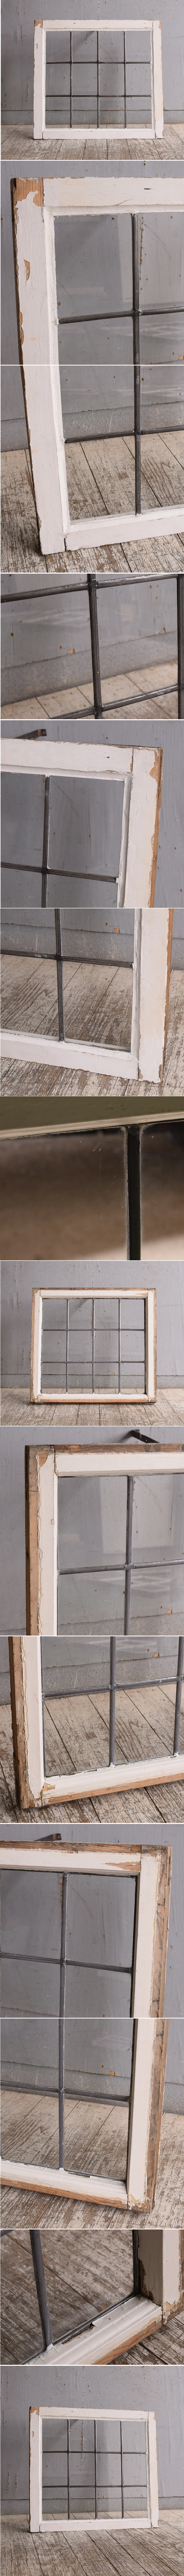 イギリス アンティーク 窓 無色透明 10766